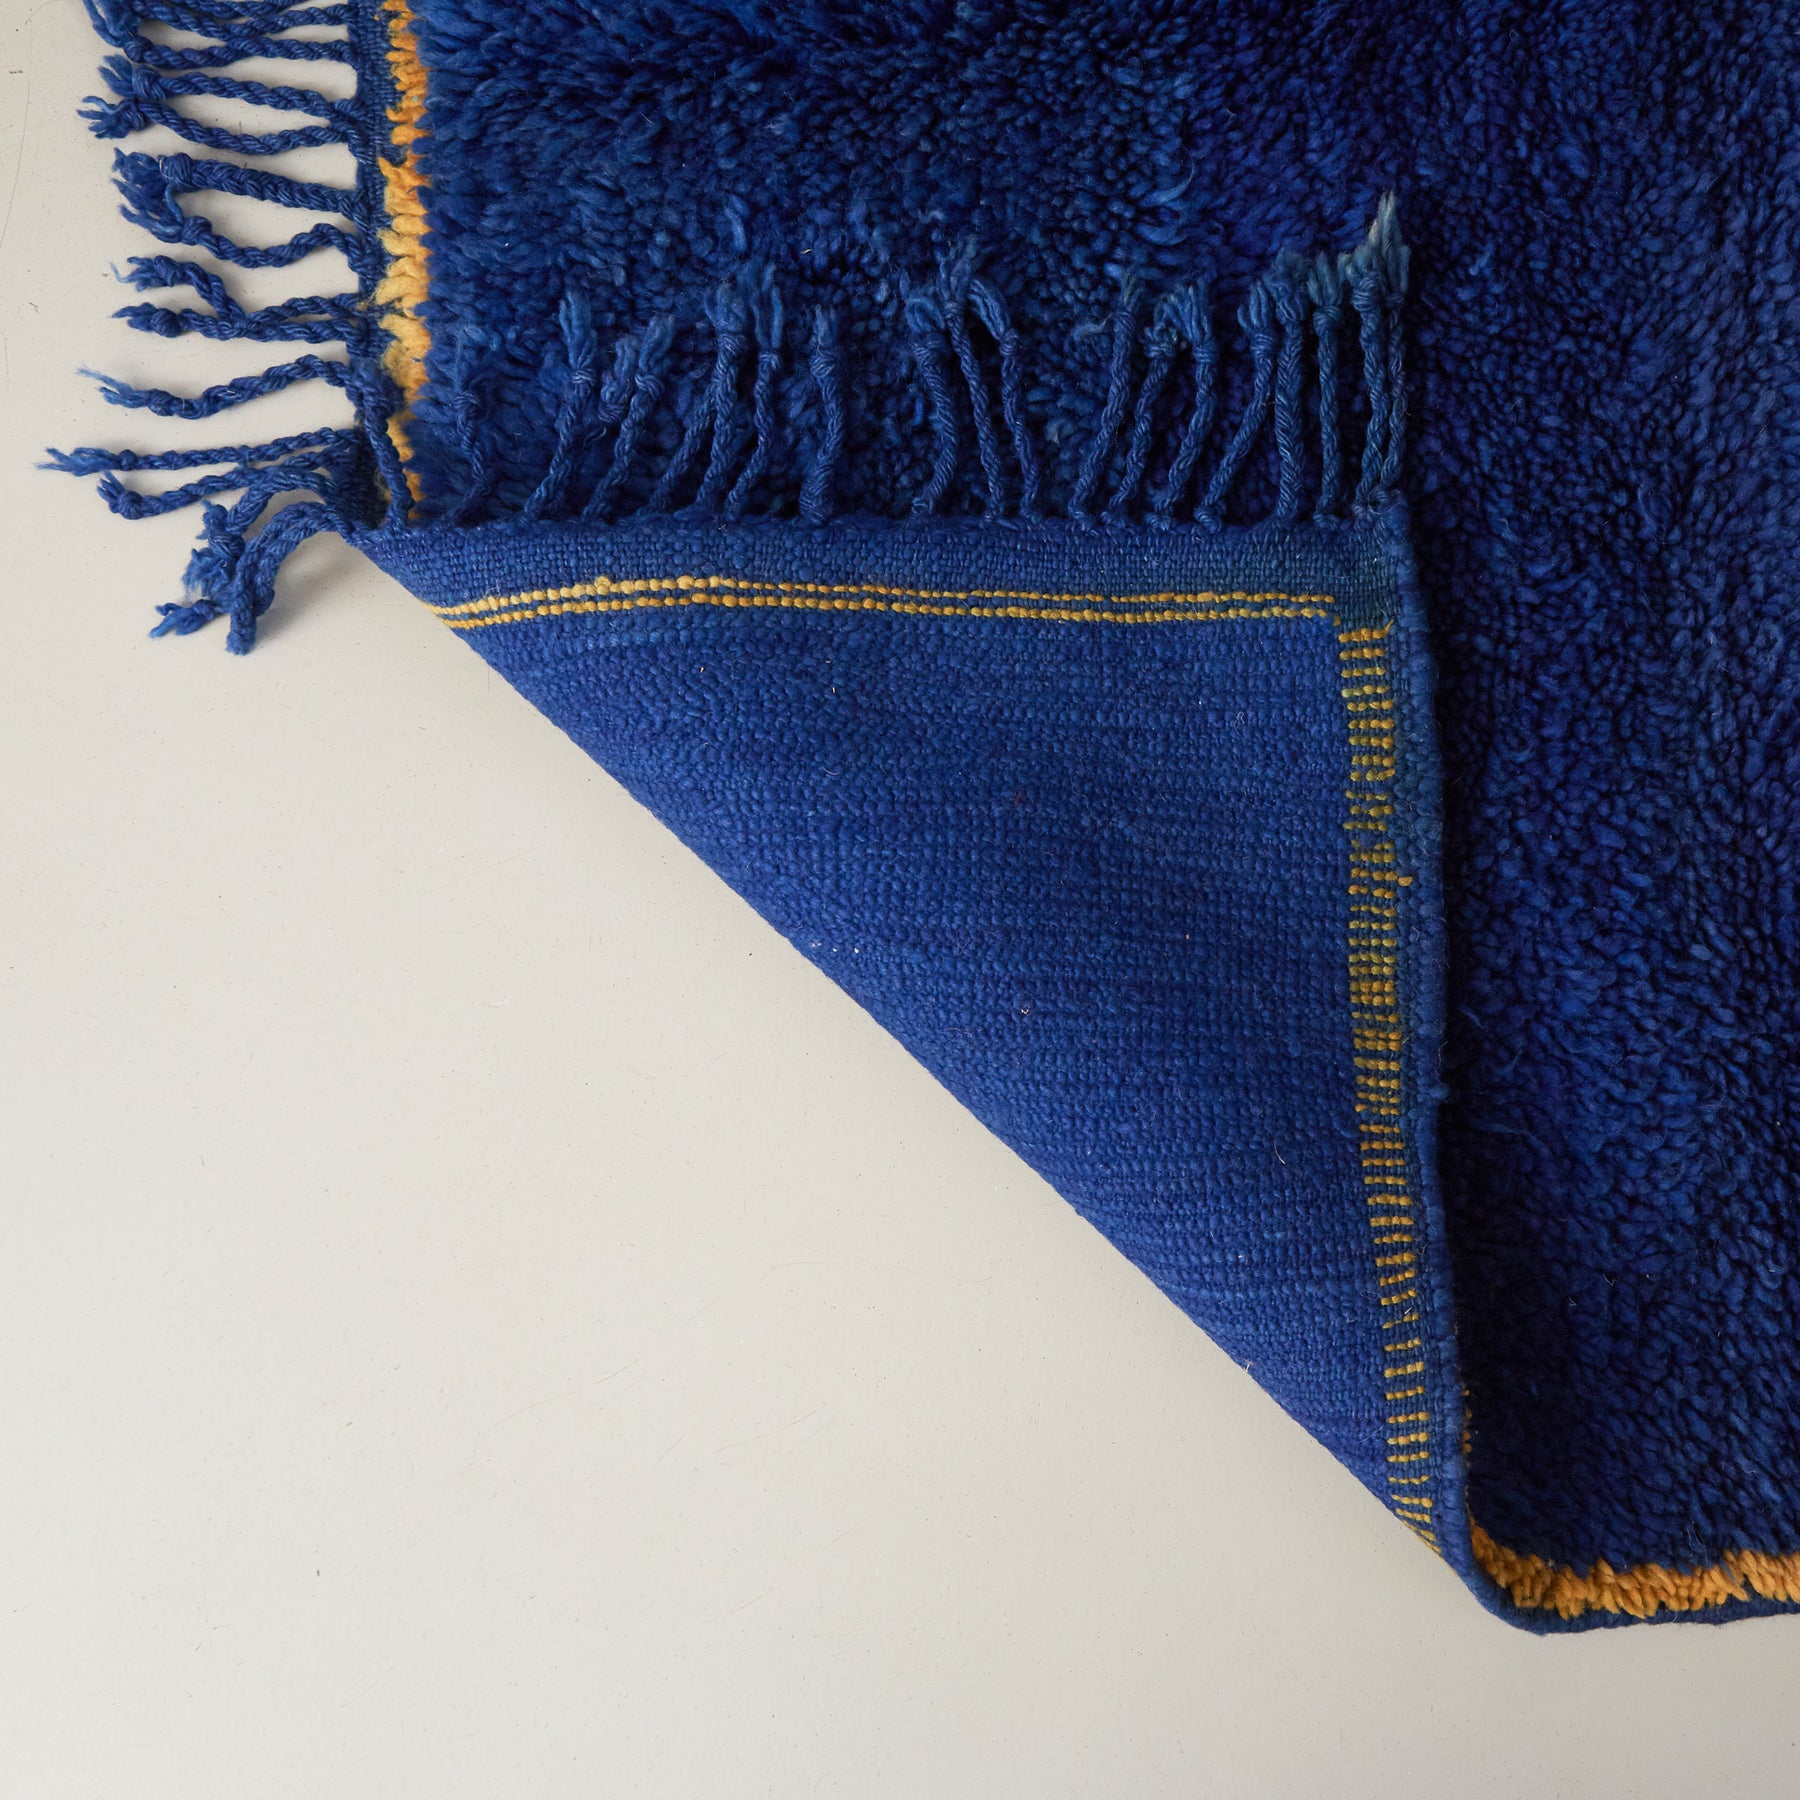 dettaglio del retro di un tappeto beni mguild blu con bordo zafferano e frangia blu